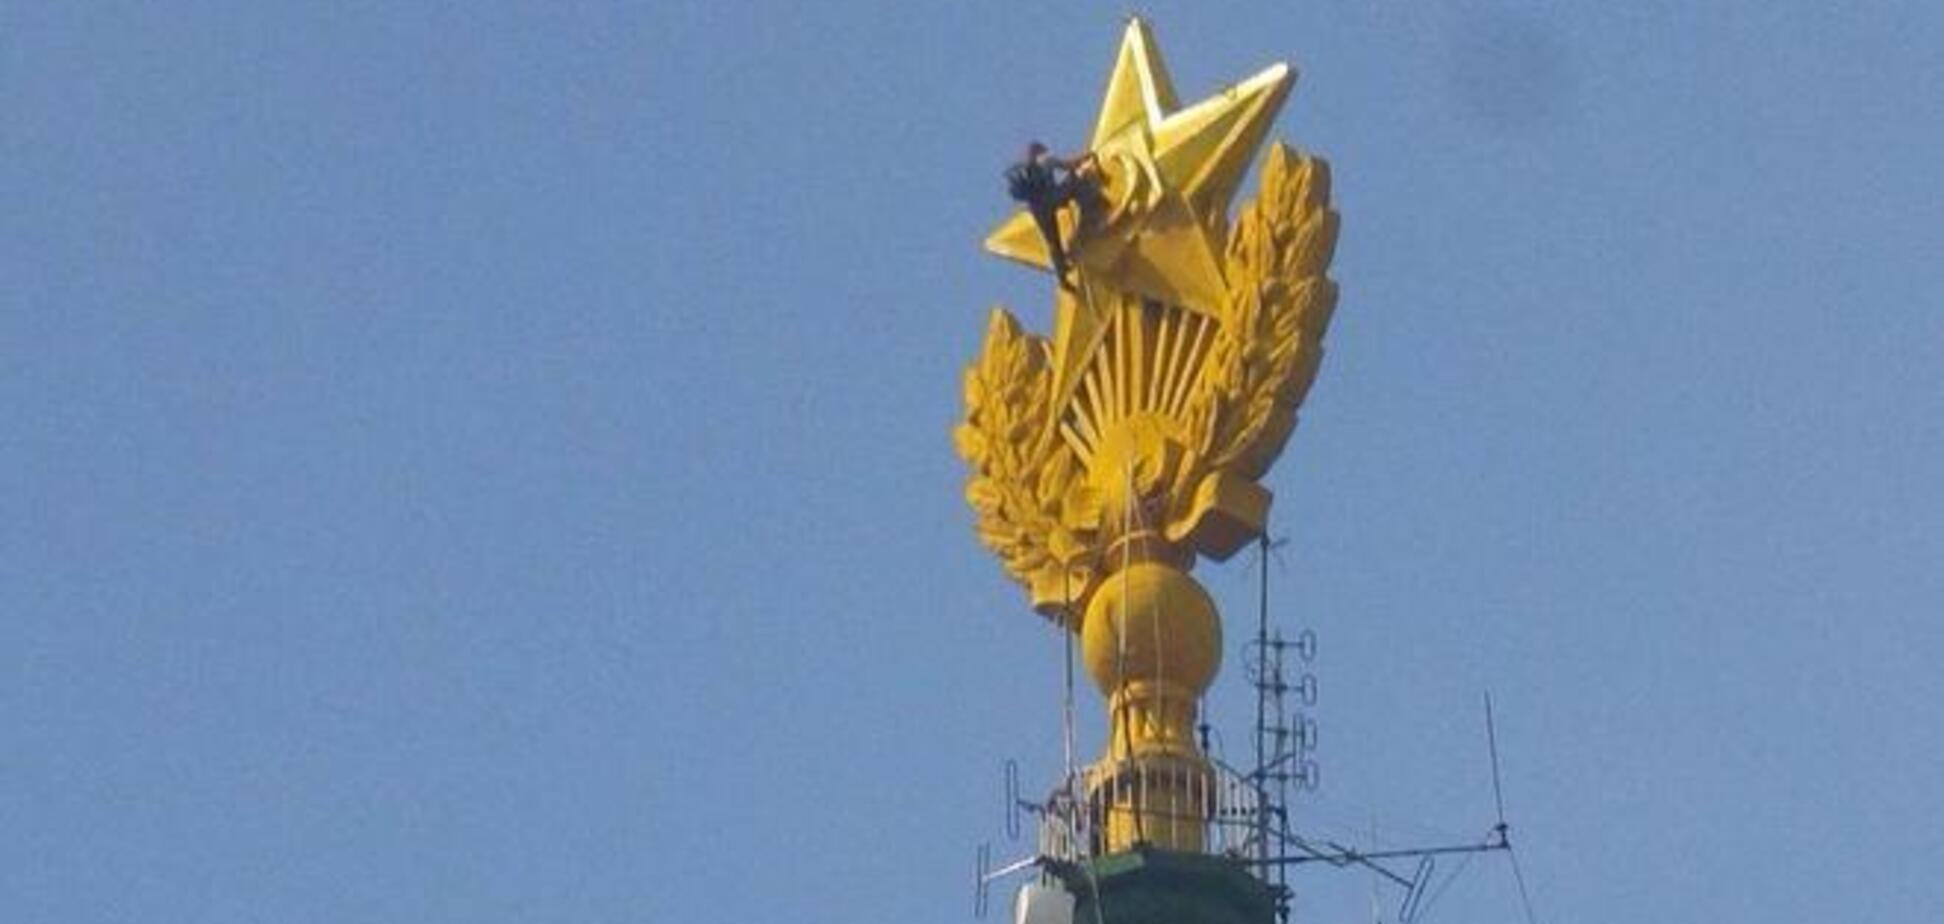 У Москві зафарбували усі сліди українського прапора на зірці висотки і відповіли триколором